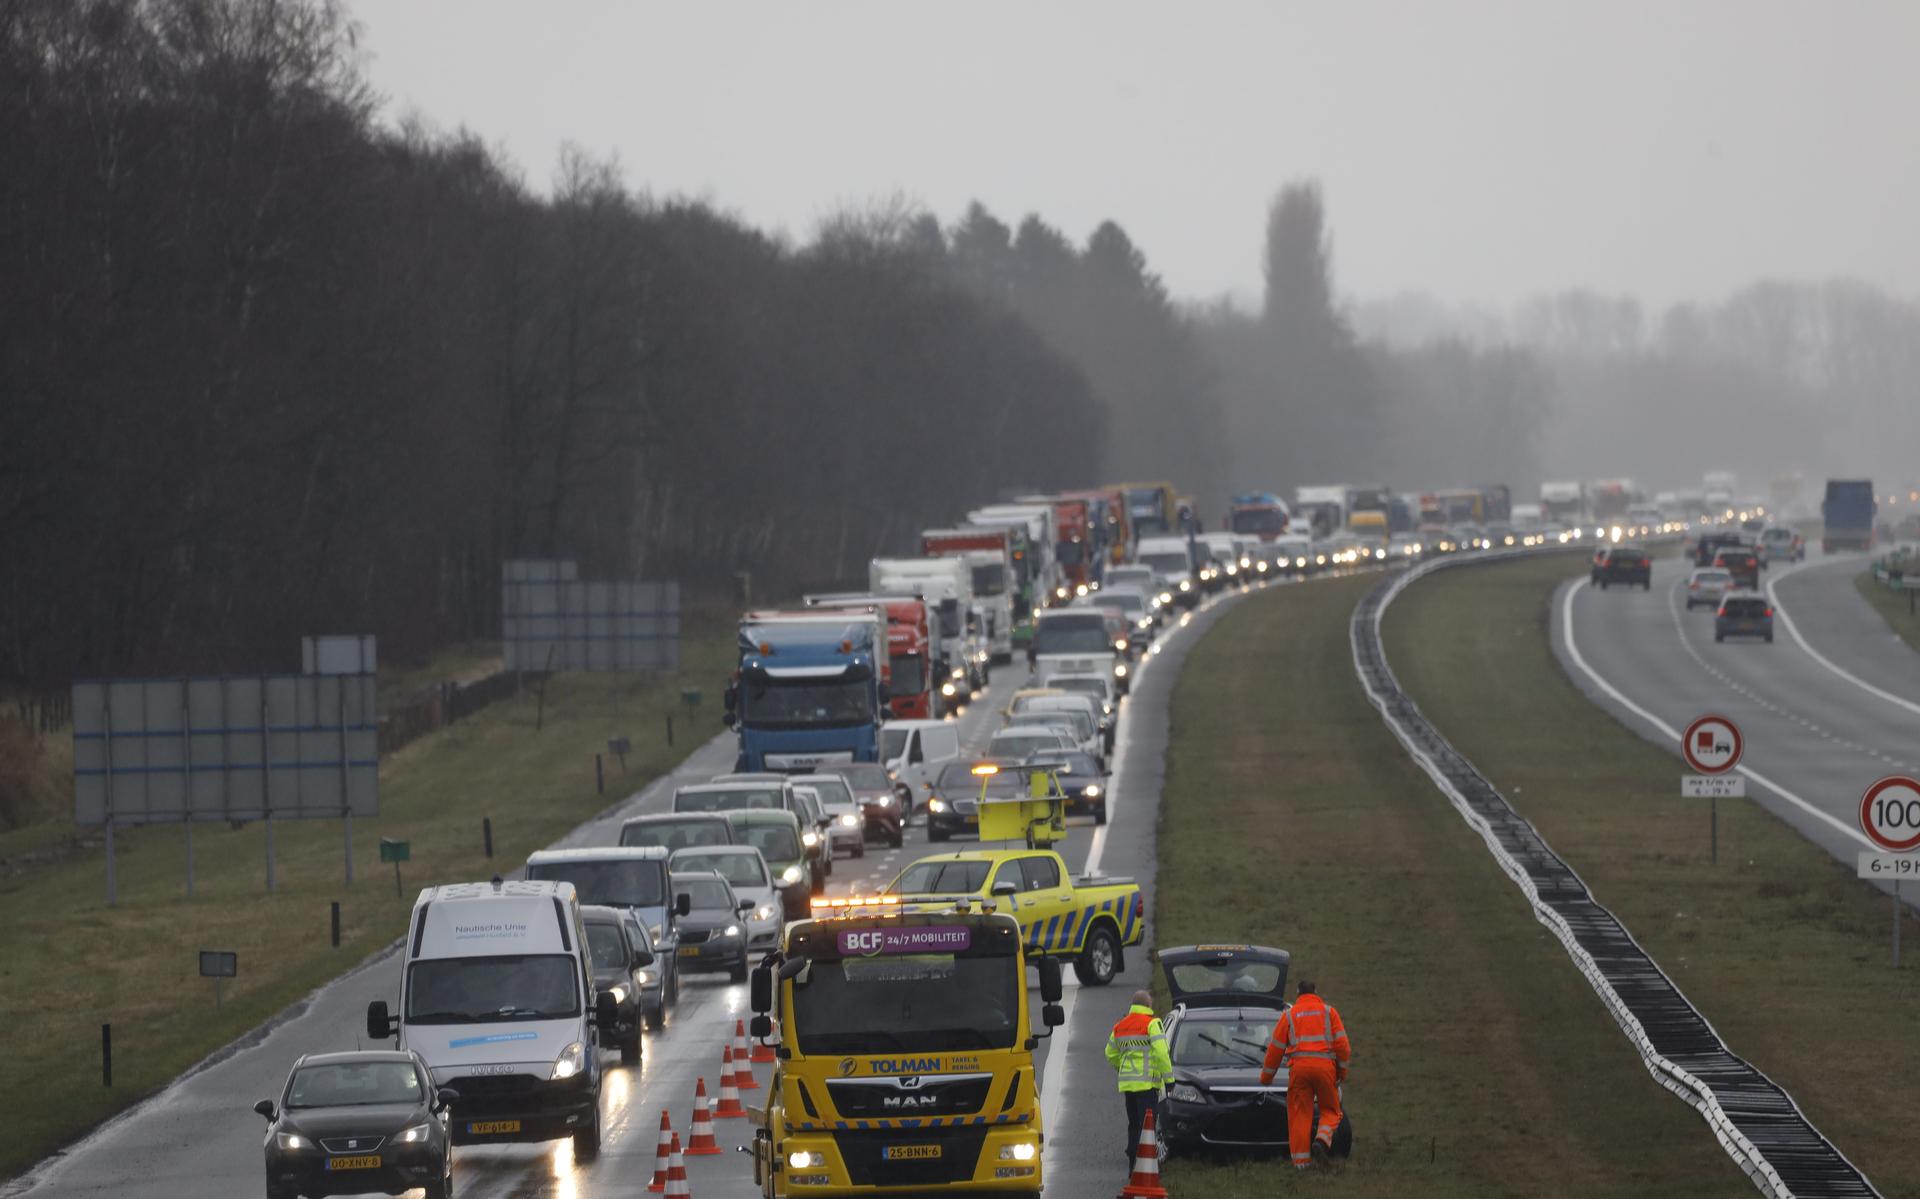 Op de A7 ter hoogte van Beetsterzwaag zijn vrijdagmiddag in korte tijd meerdere ongevallen gebeurd met een vrachtauto en meerdere auto’s.